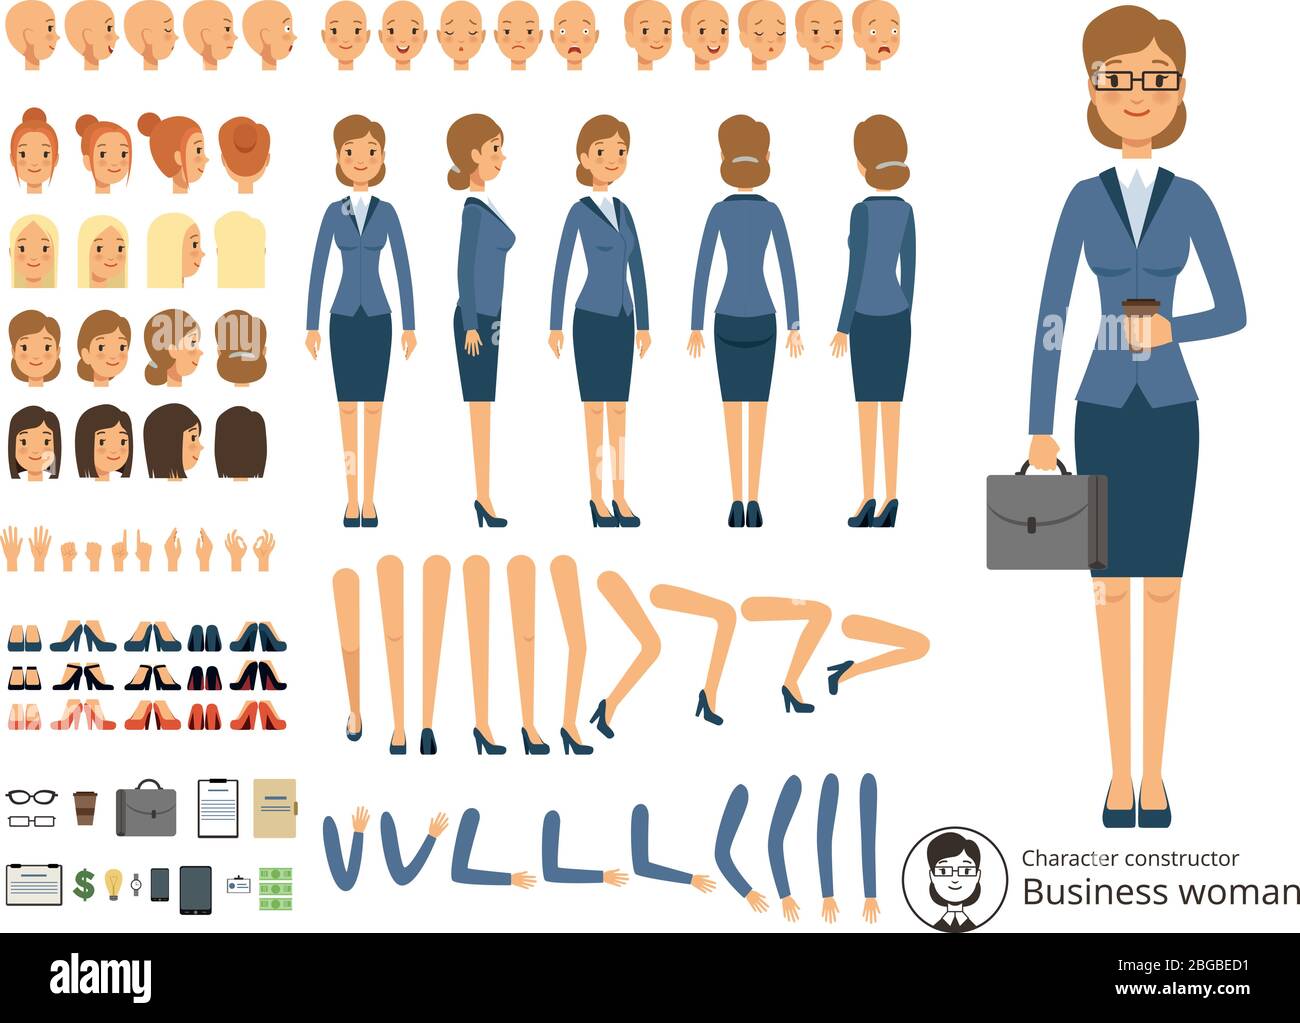 Charakter Konstrukteur der Geschäftsfrau. Cartoon Vektor-Illustrationen von verschiedenen Körperteilen und thematischen Elementen Stock Vektor